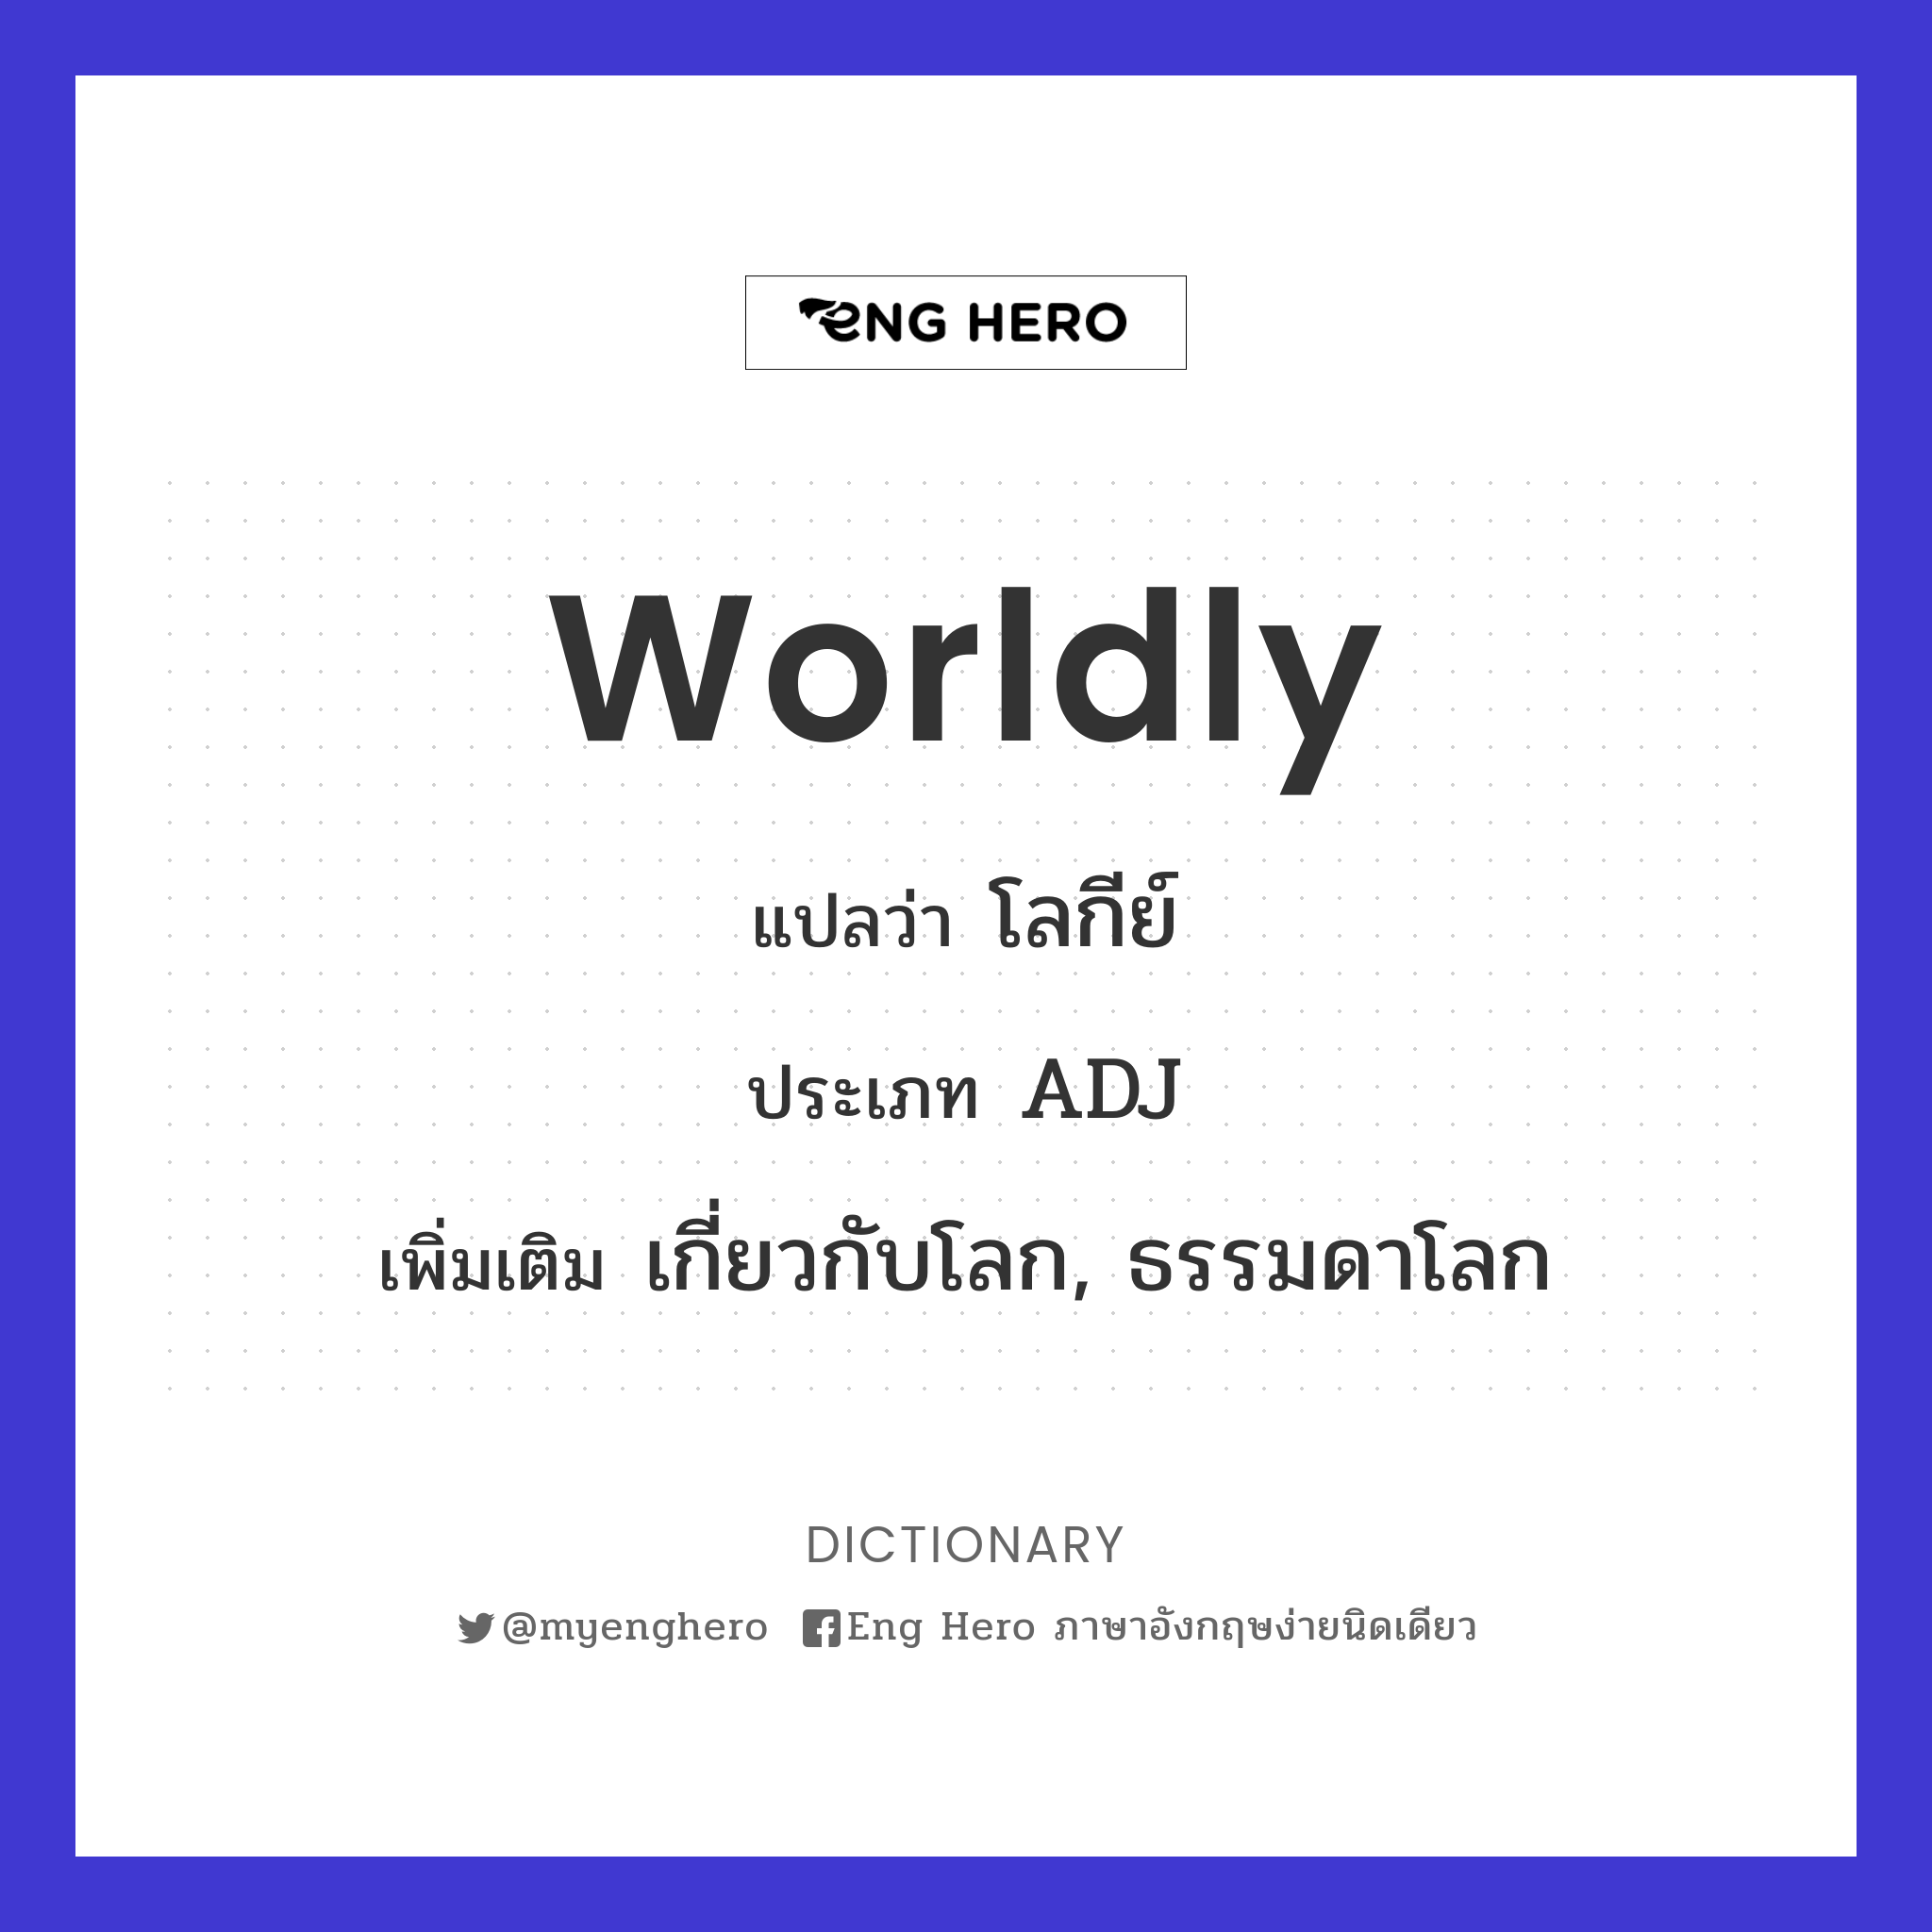 worldly